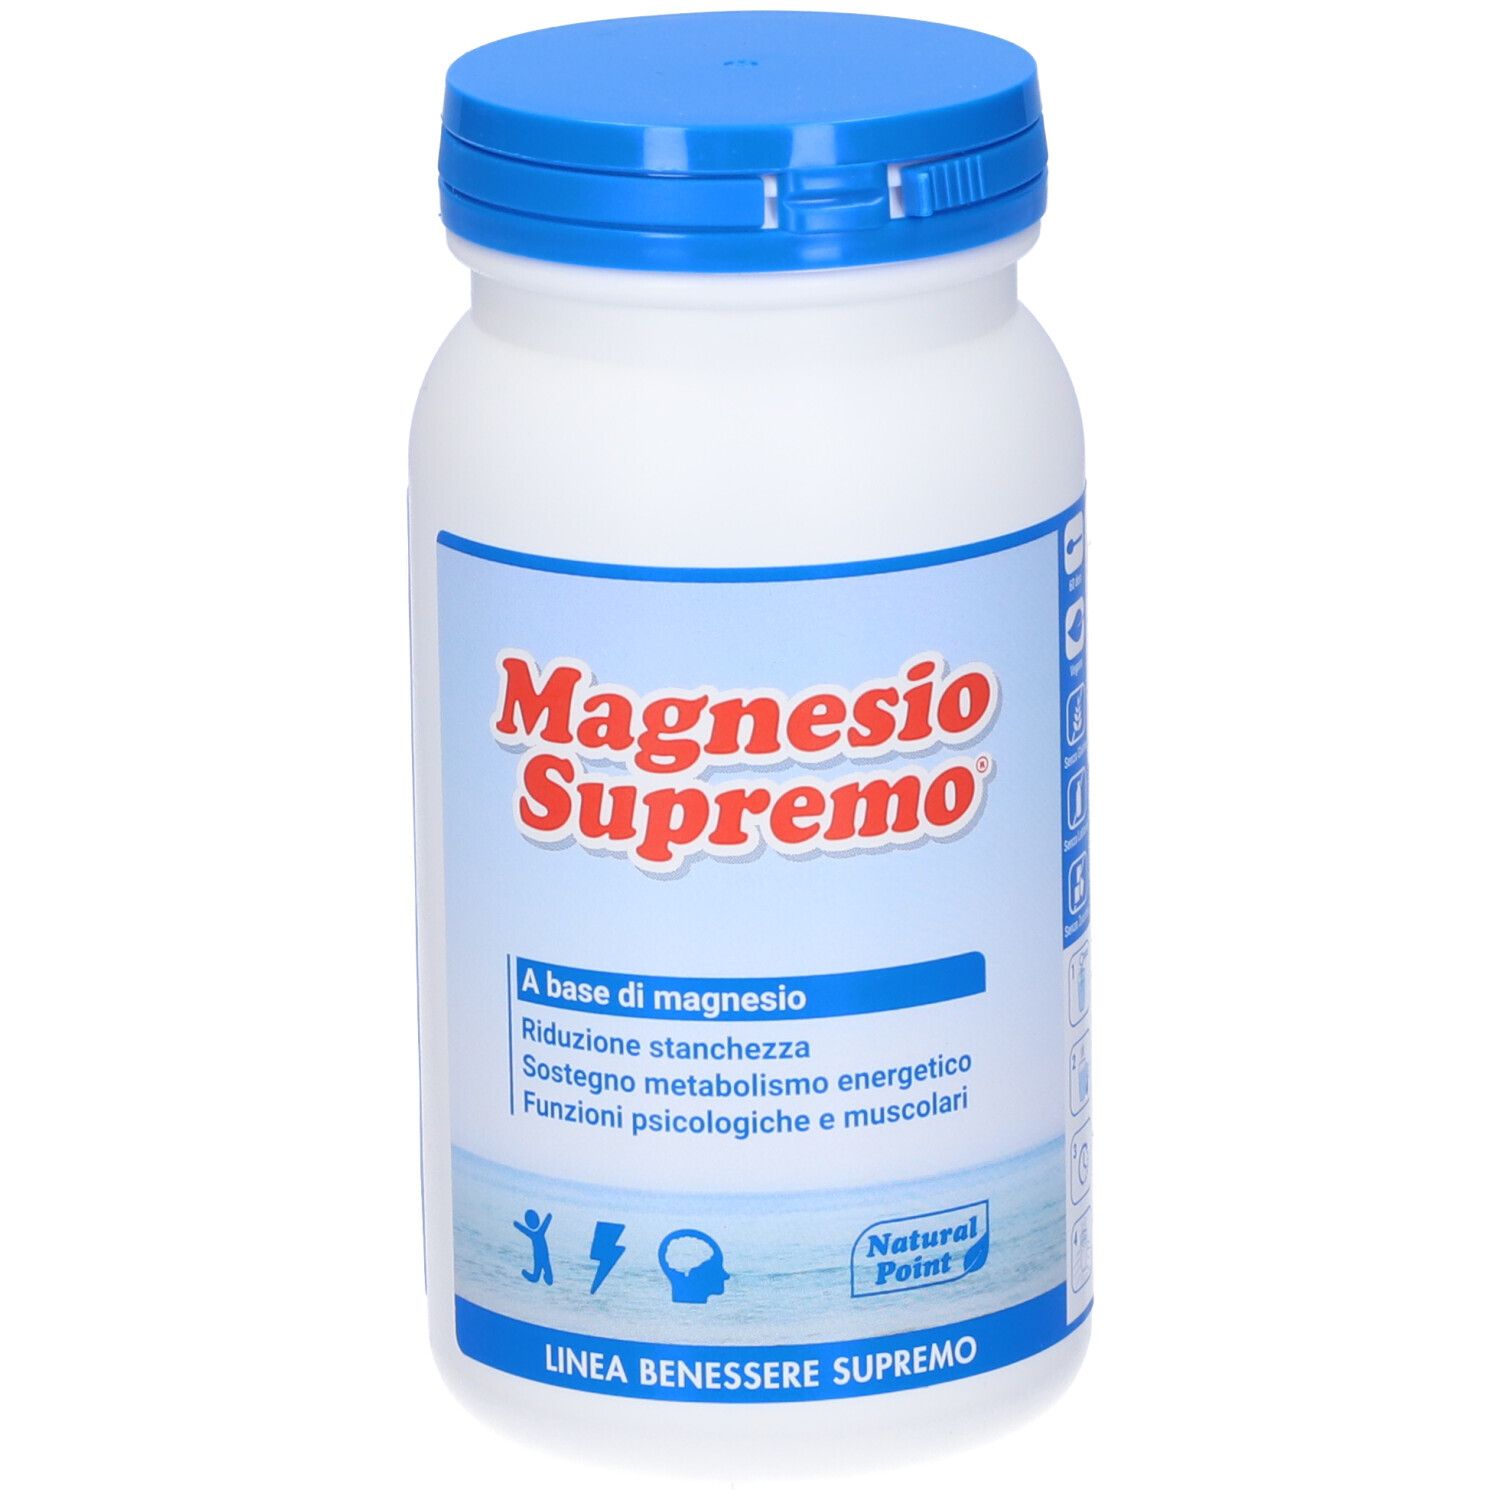 Magnesio Supremo®